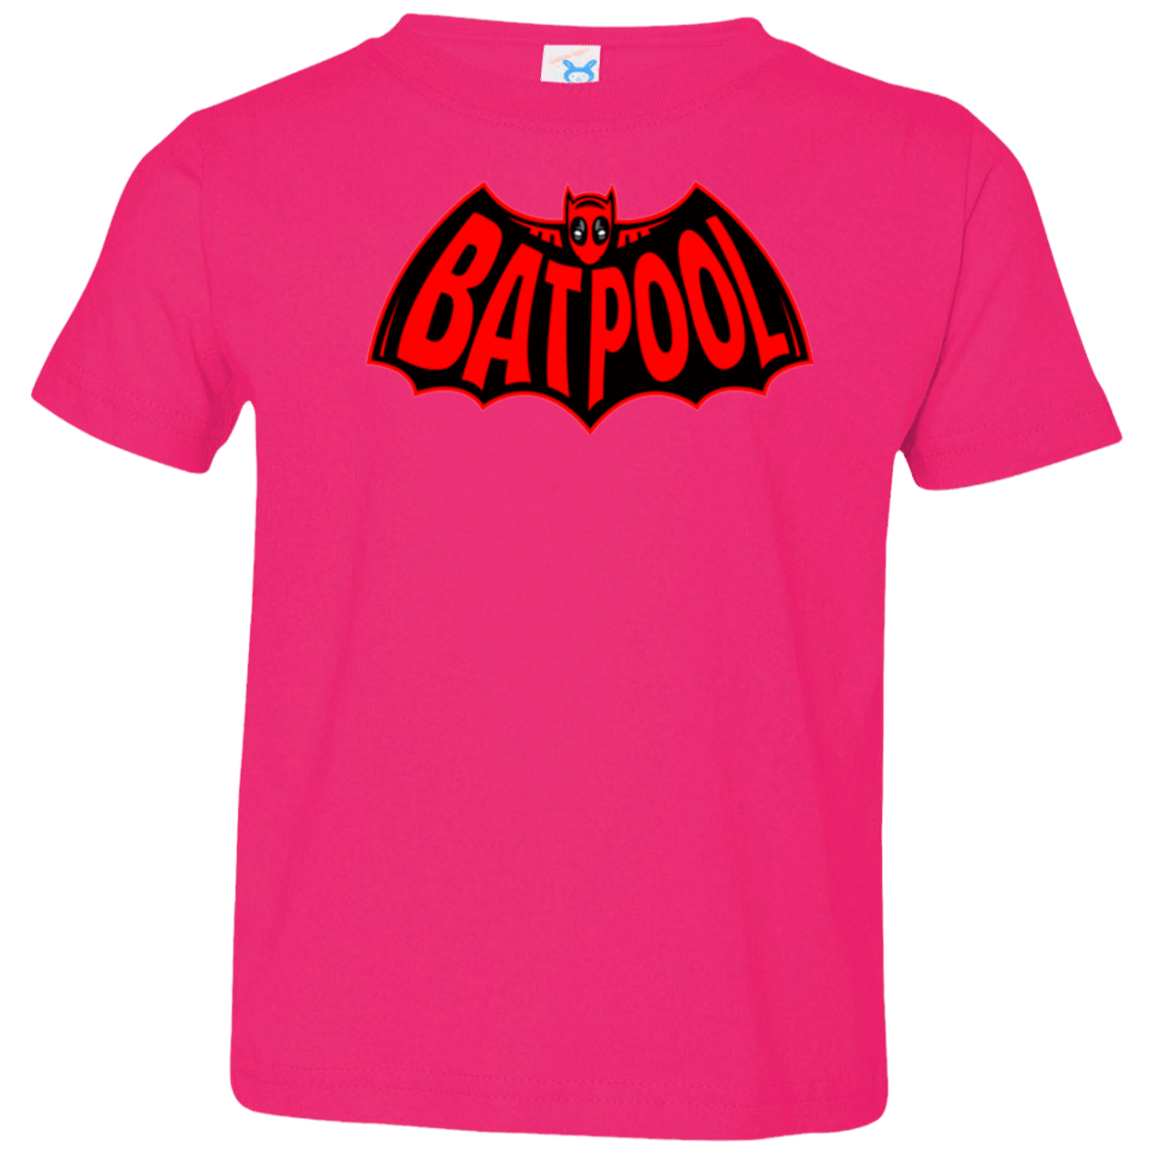 T-Shirts Hot Pink / 2T Batpool Toddler Premium T-Shirt